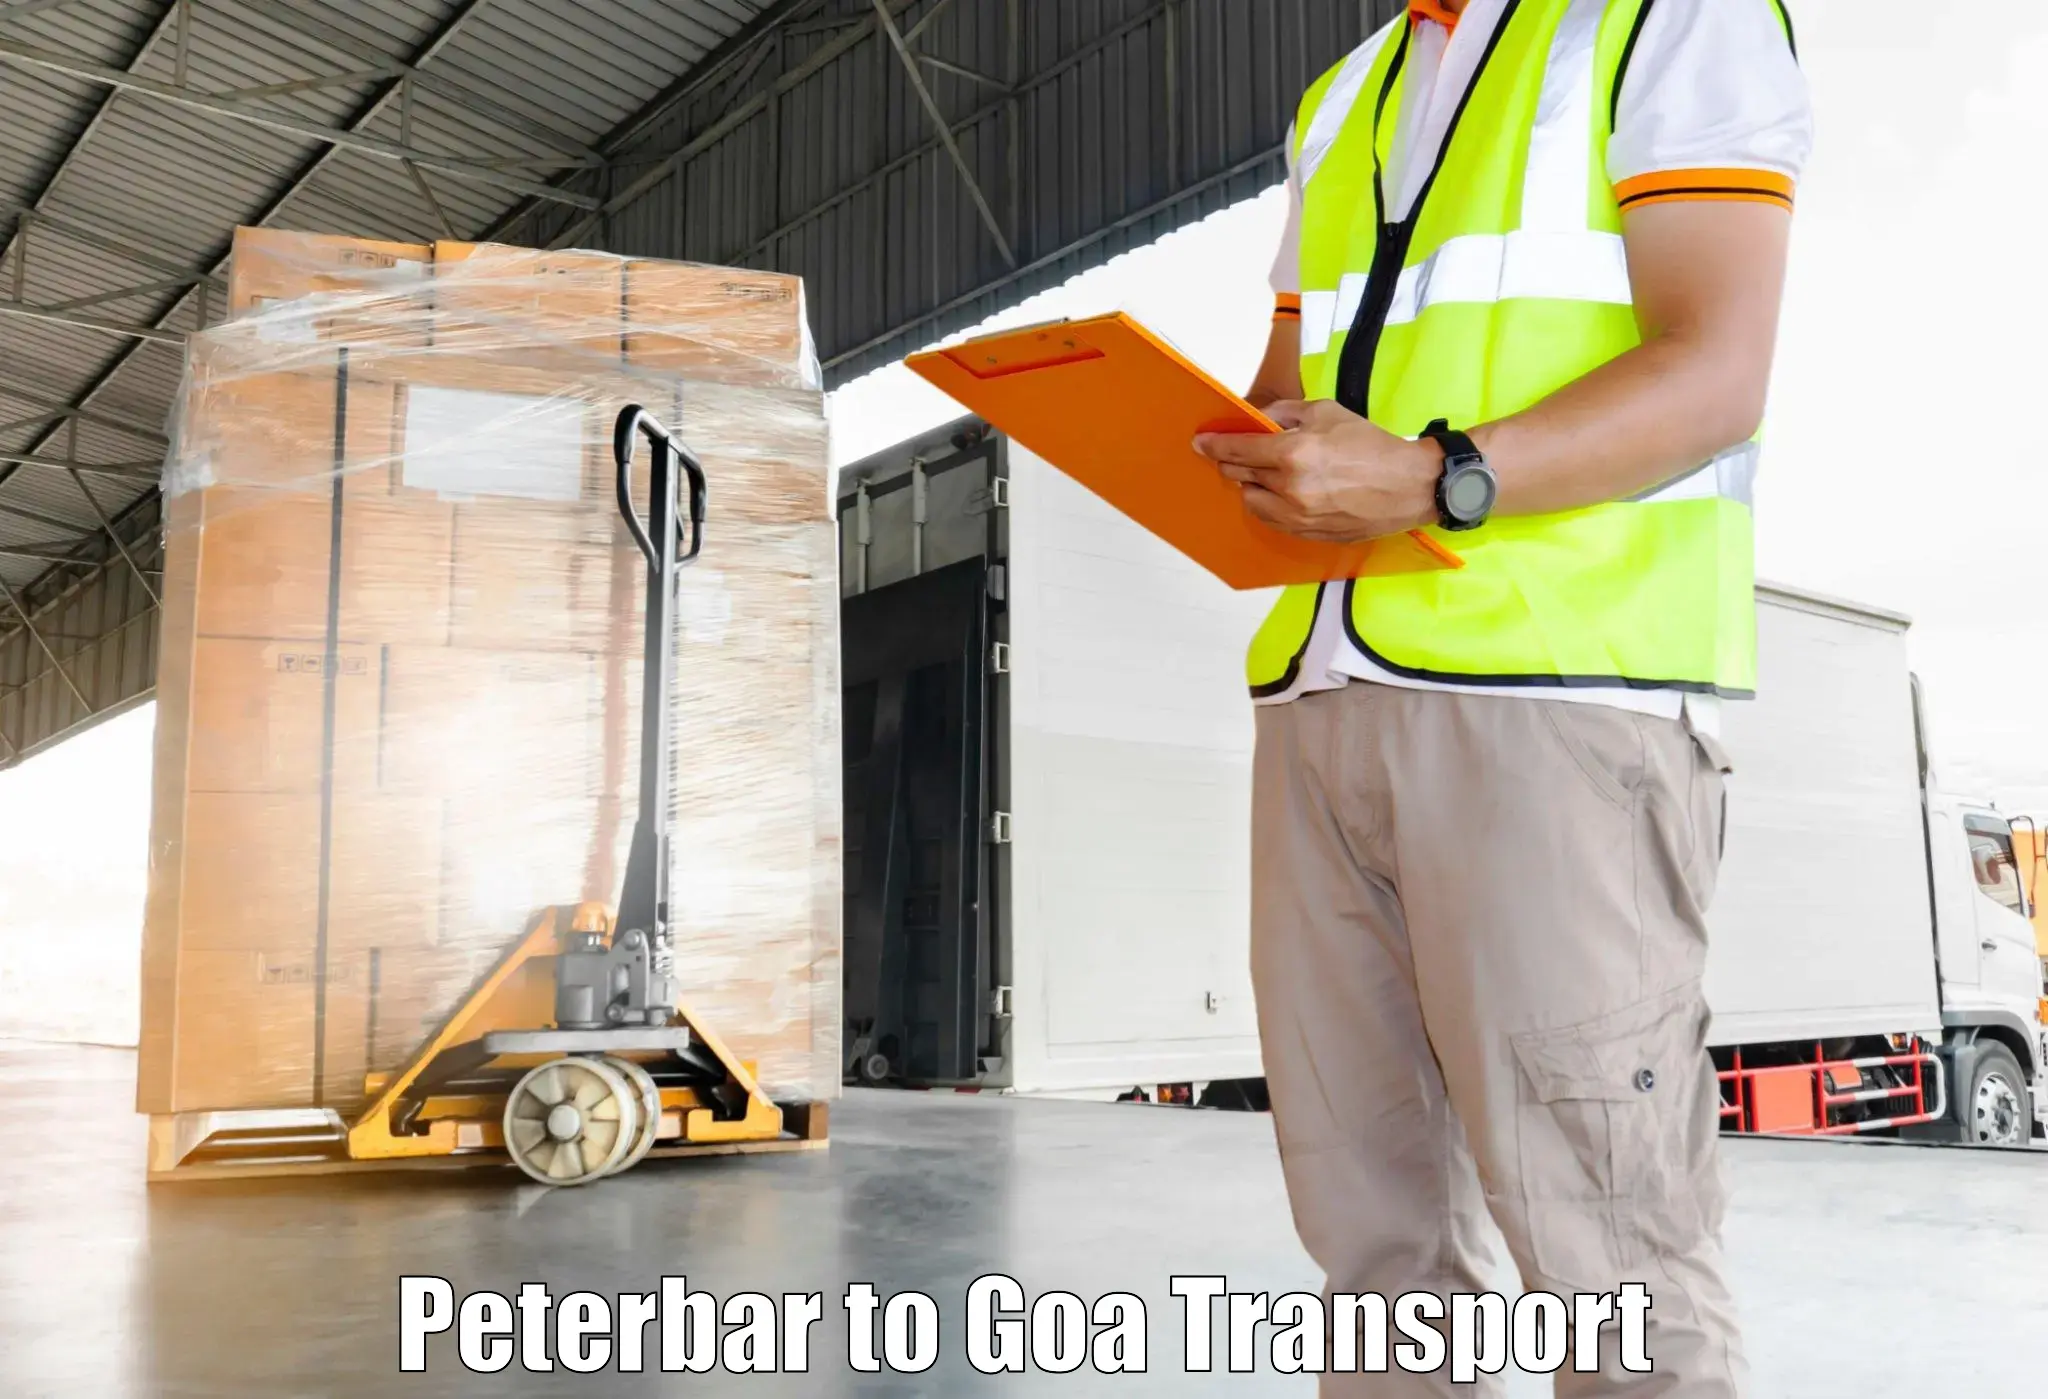 Pick up transport service Peterbar to Mormugao Port